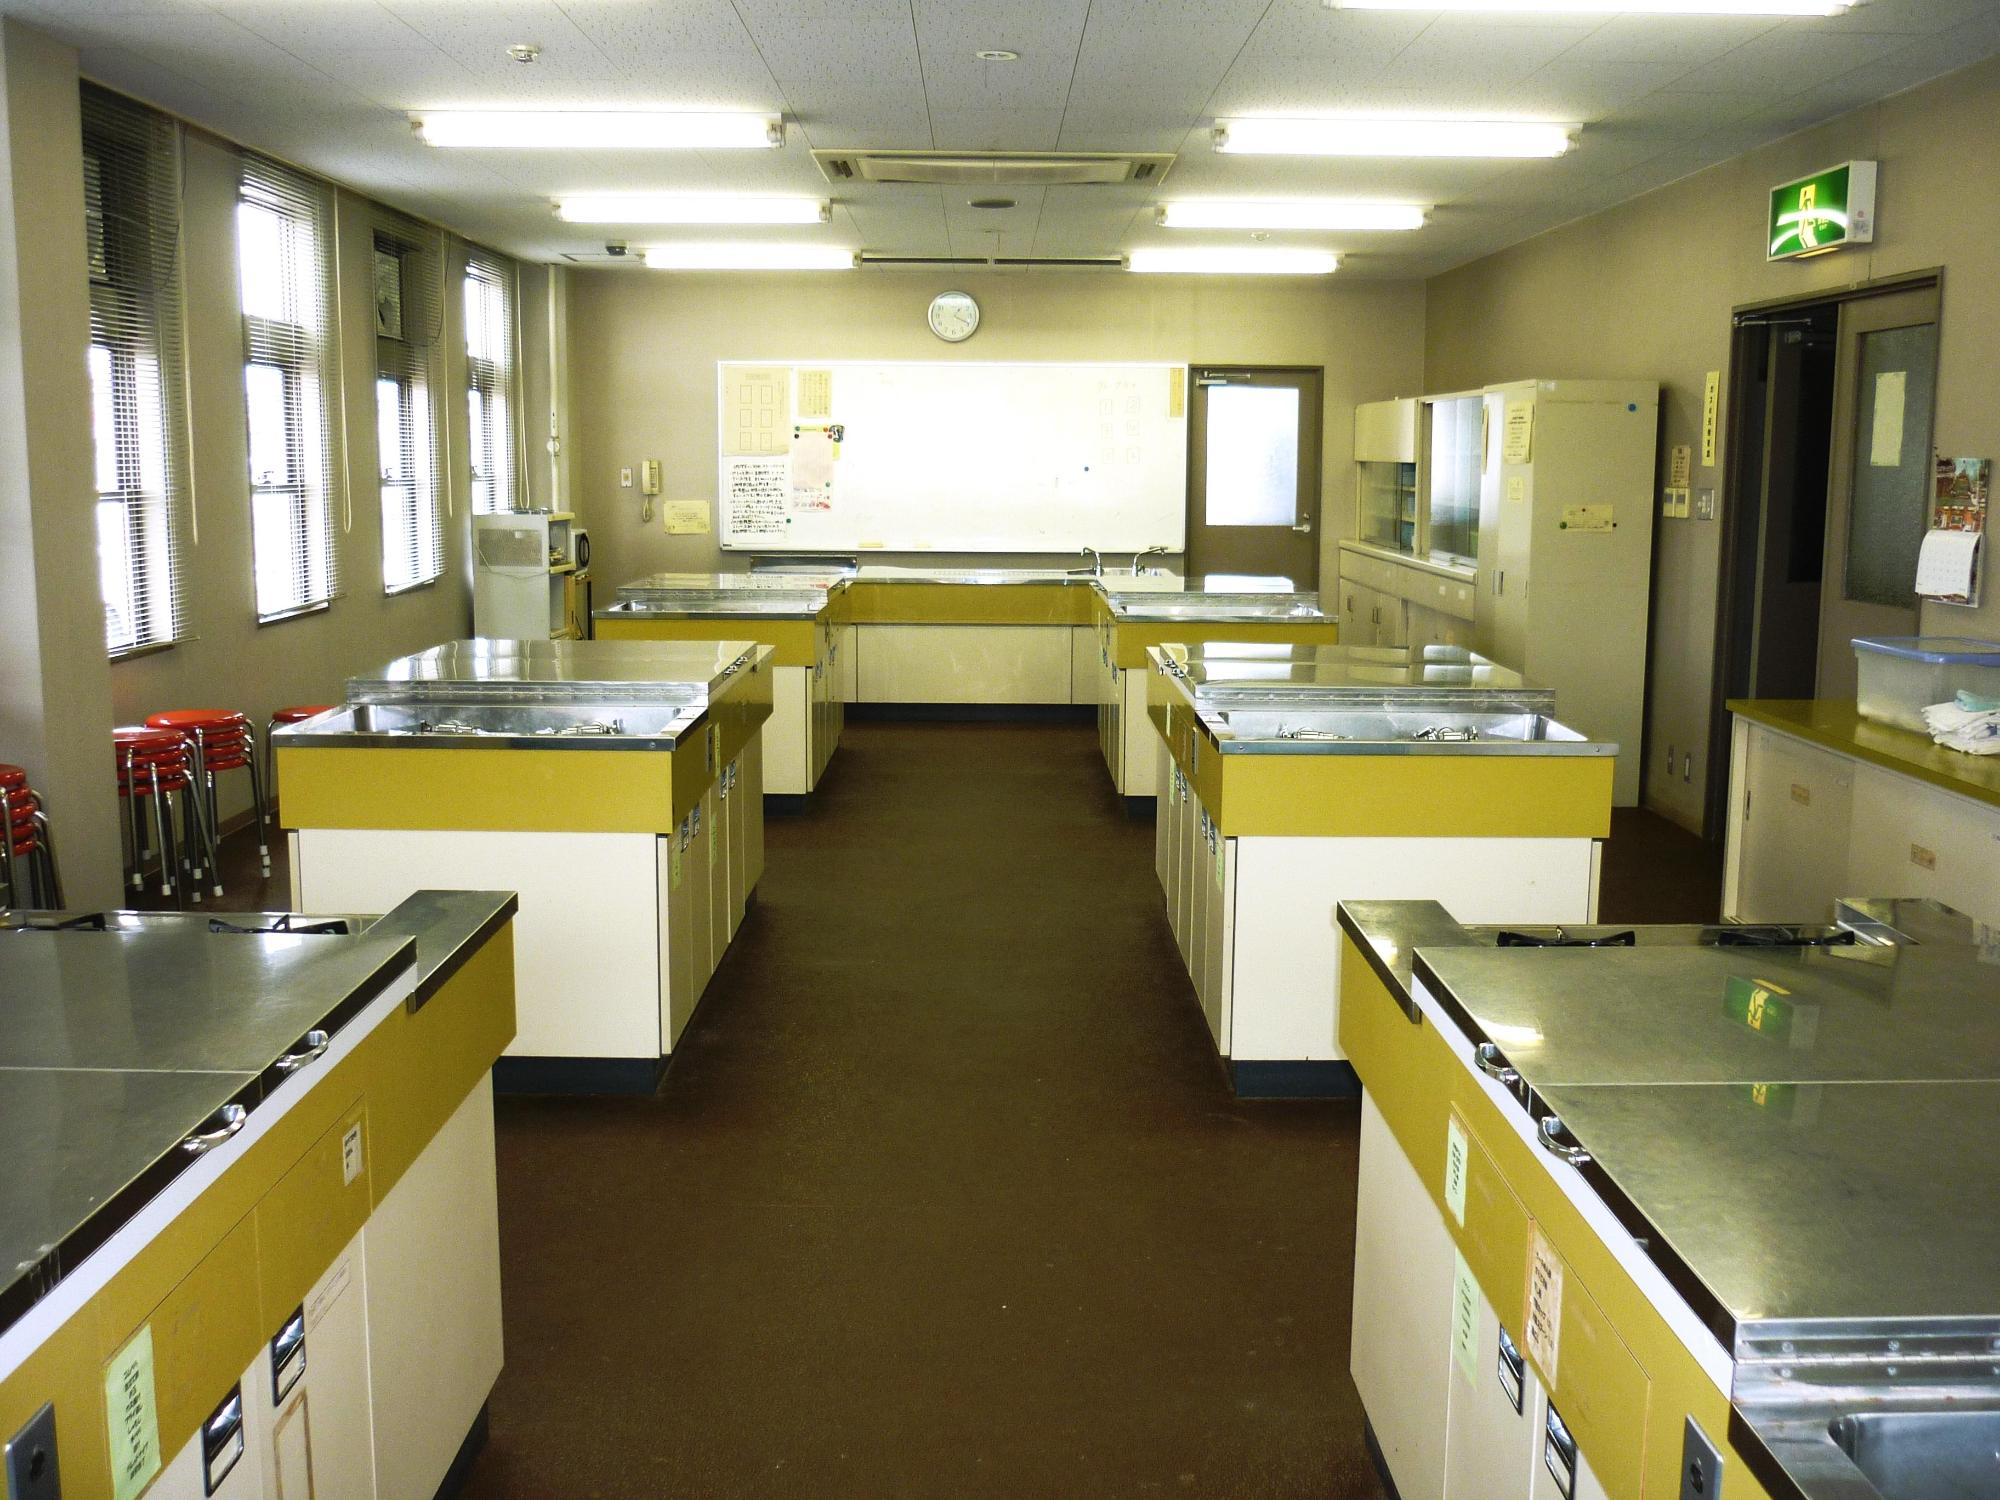 少なくとも6つの調理台が並ぶ調理実習室